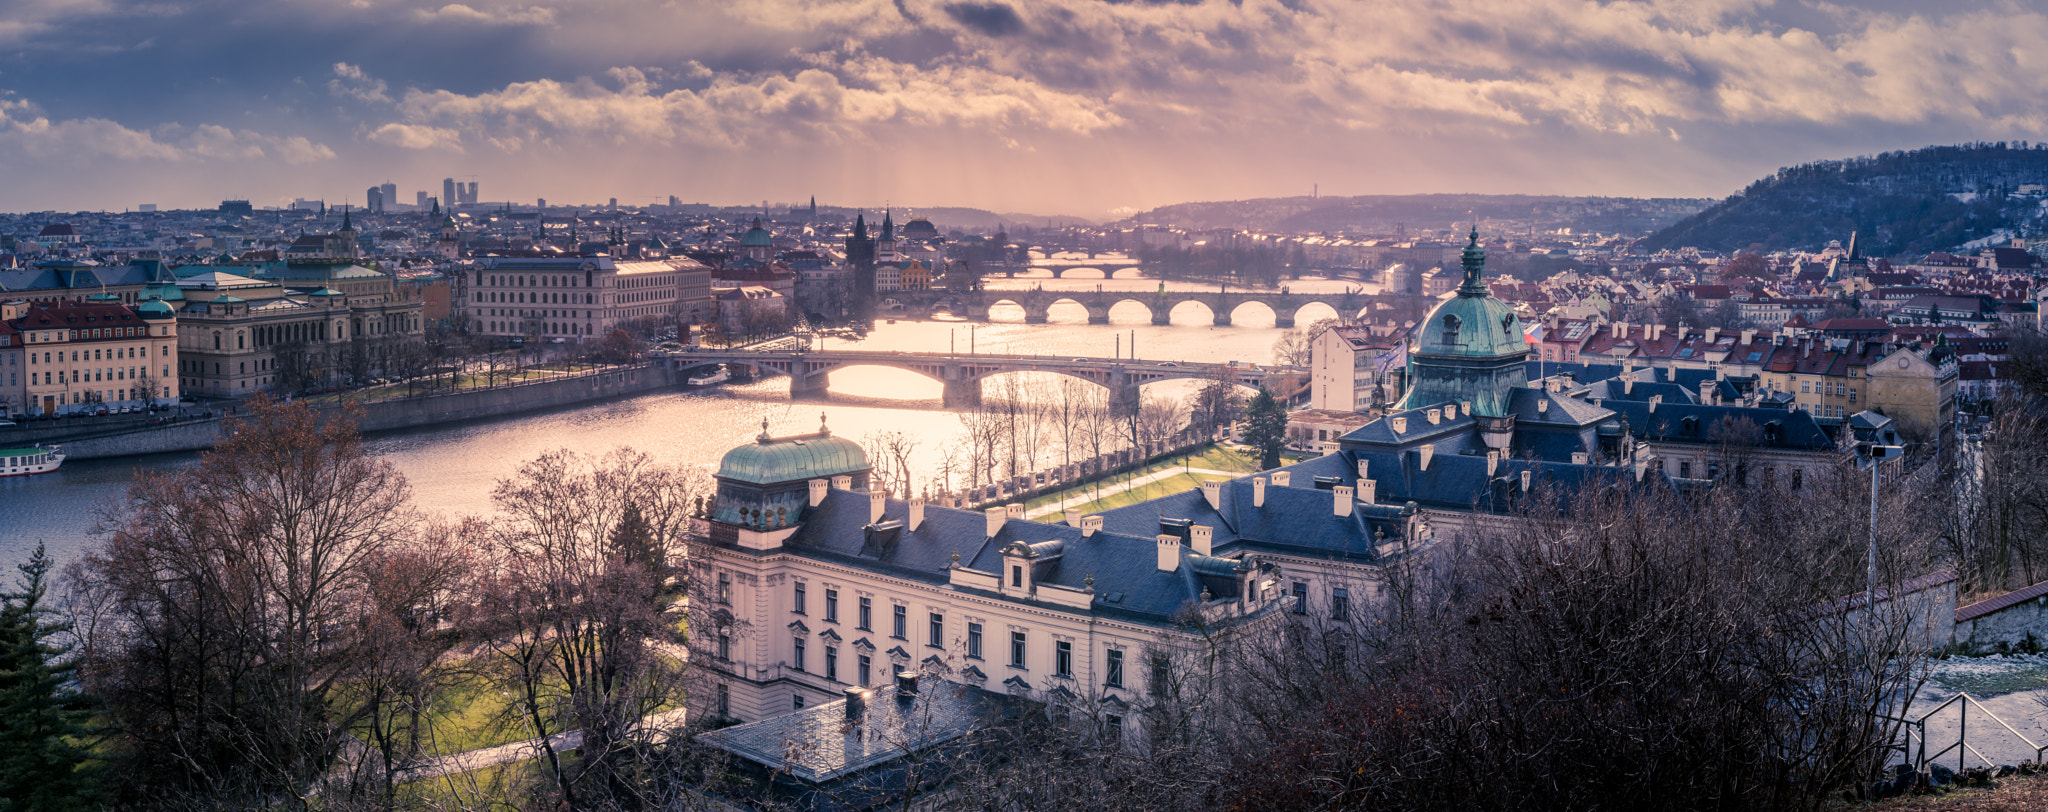 Nikon D5200 sample photo. Prague stunning view photography